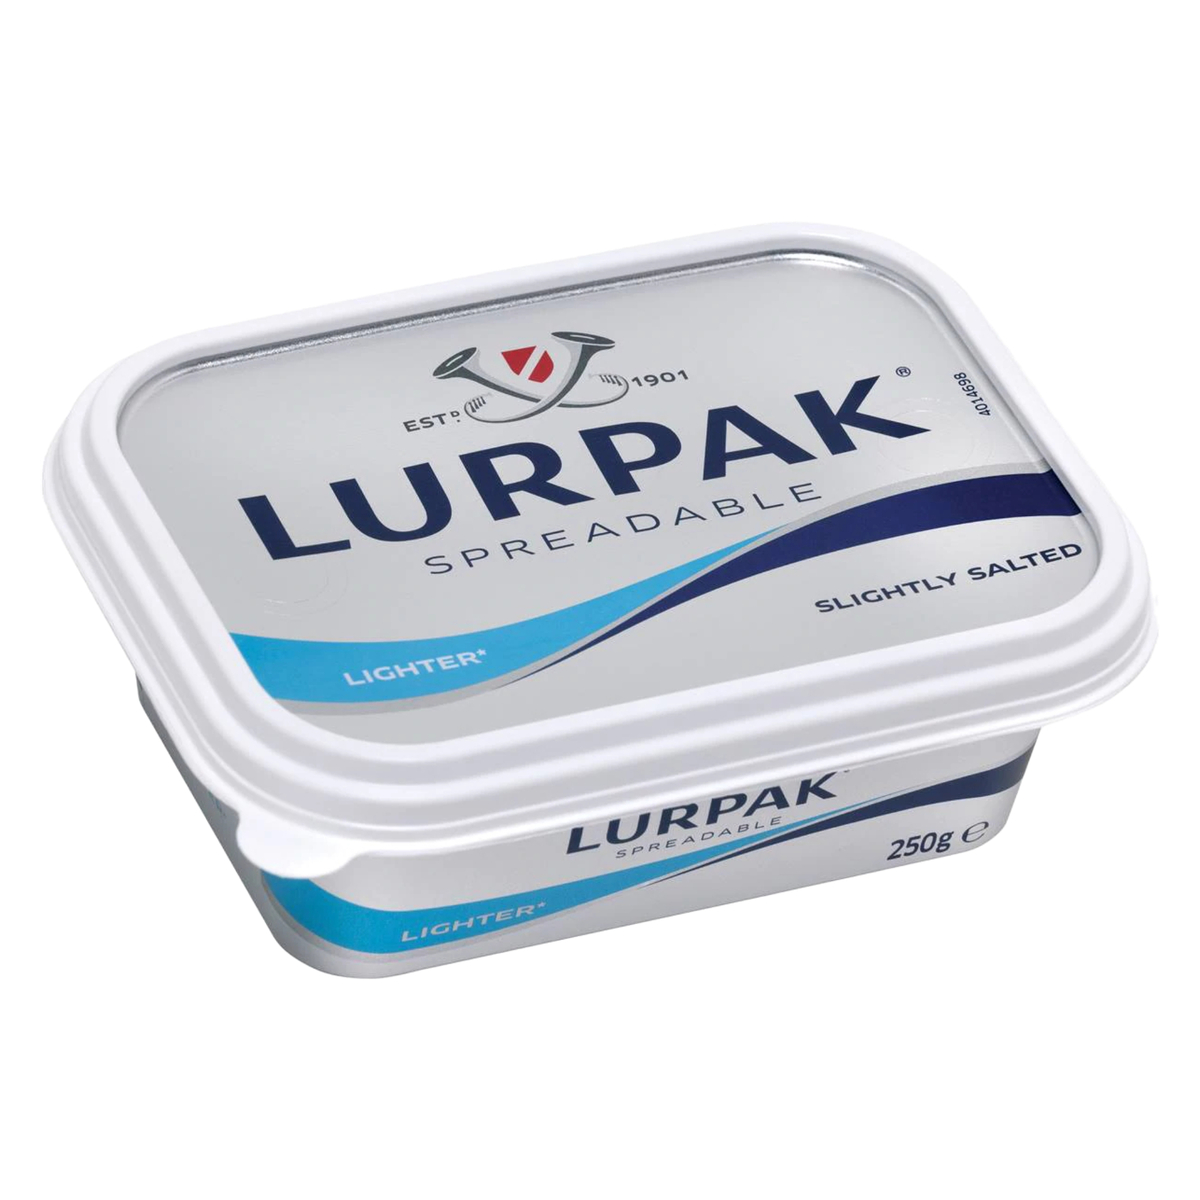 Lurpak Spreadable Lighter 250g